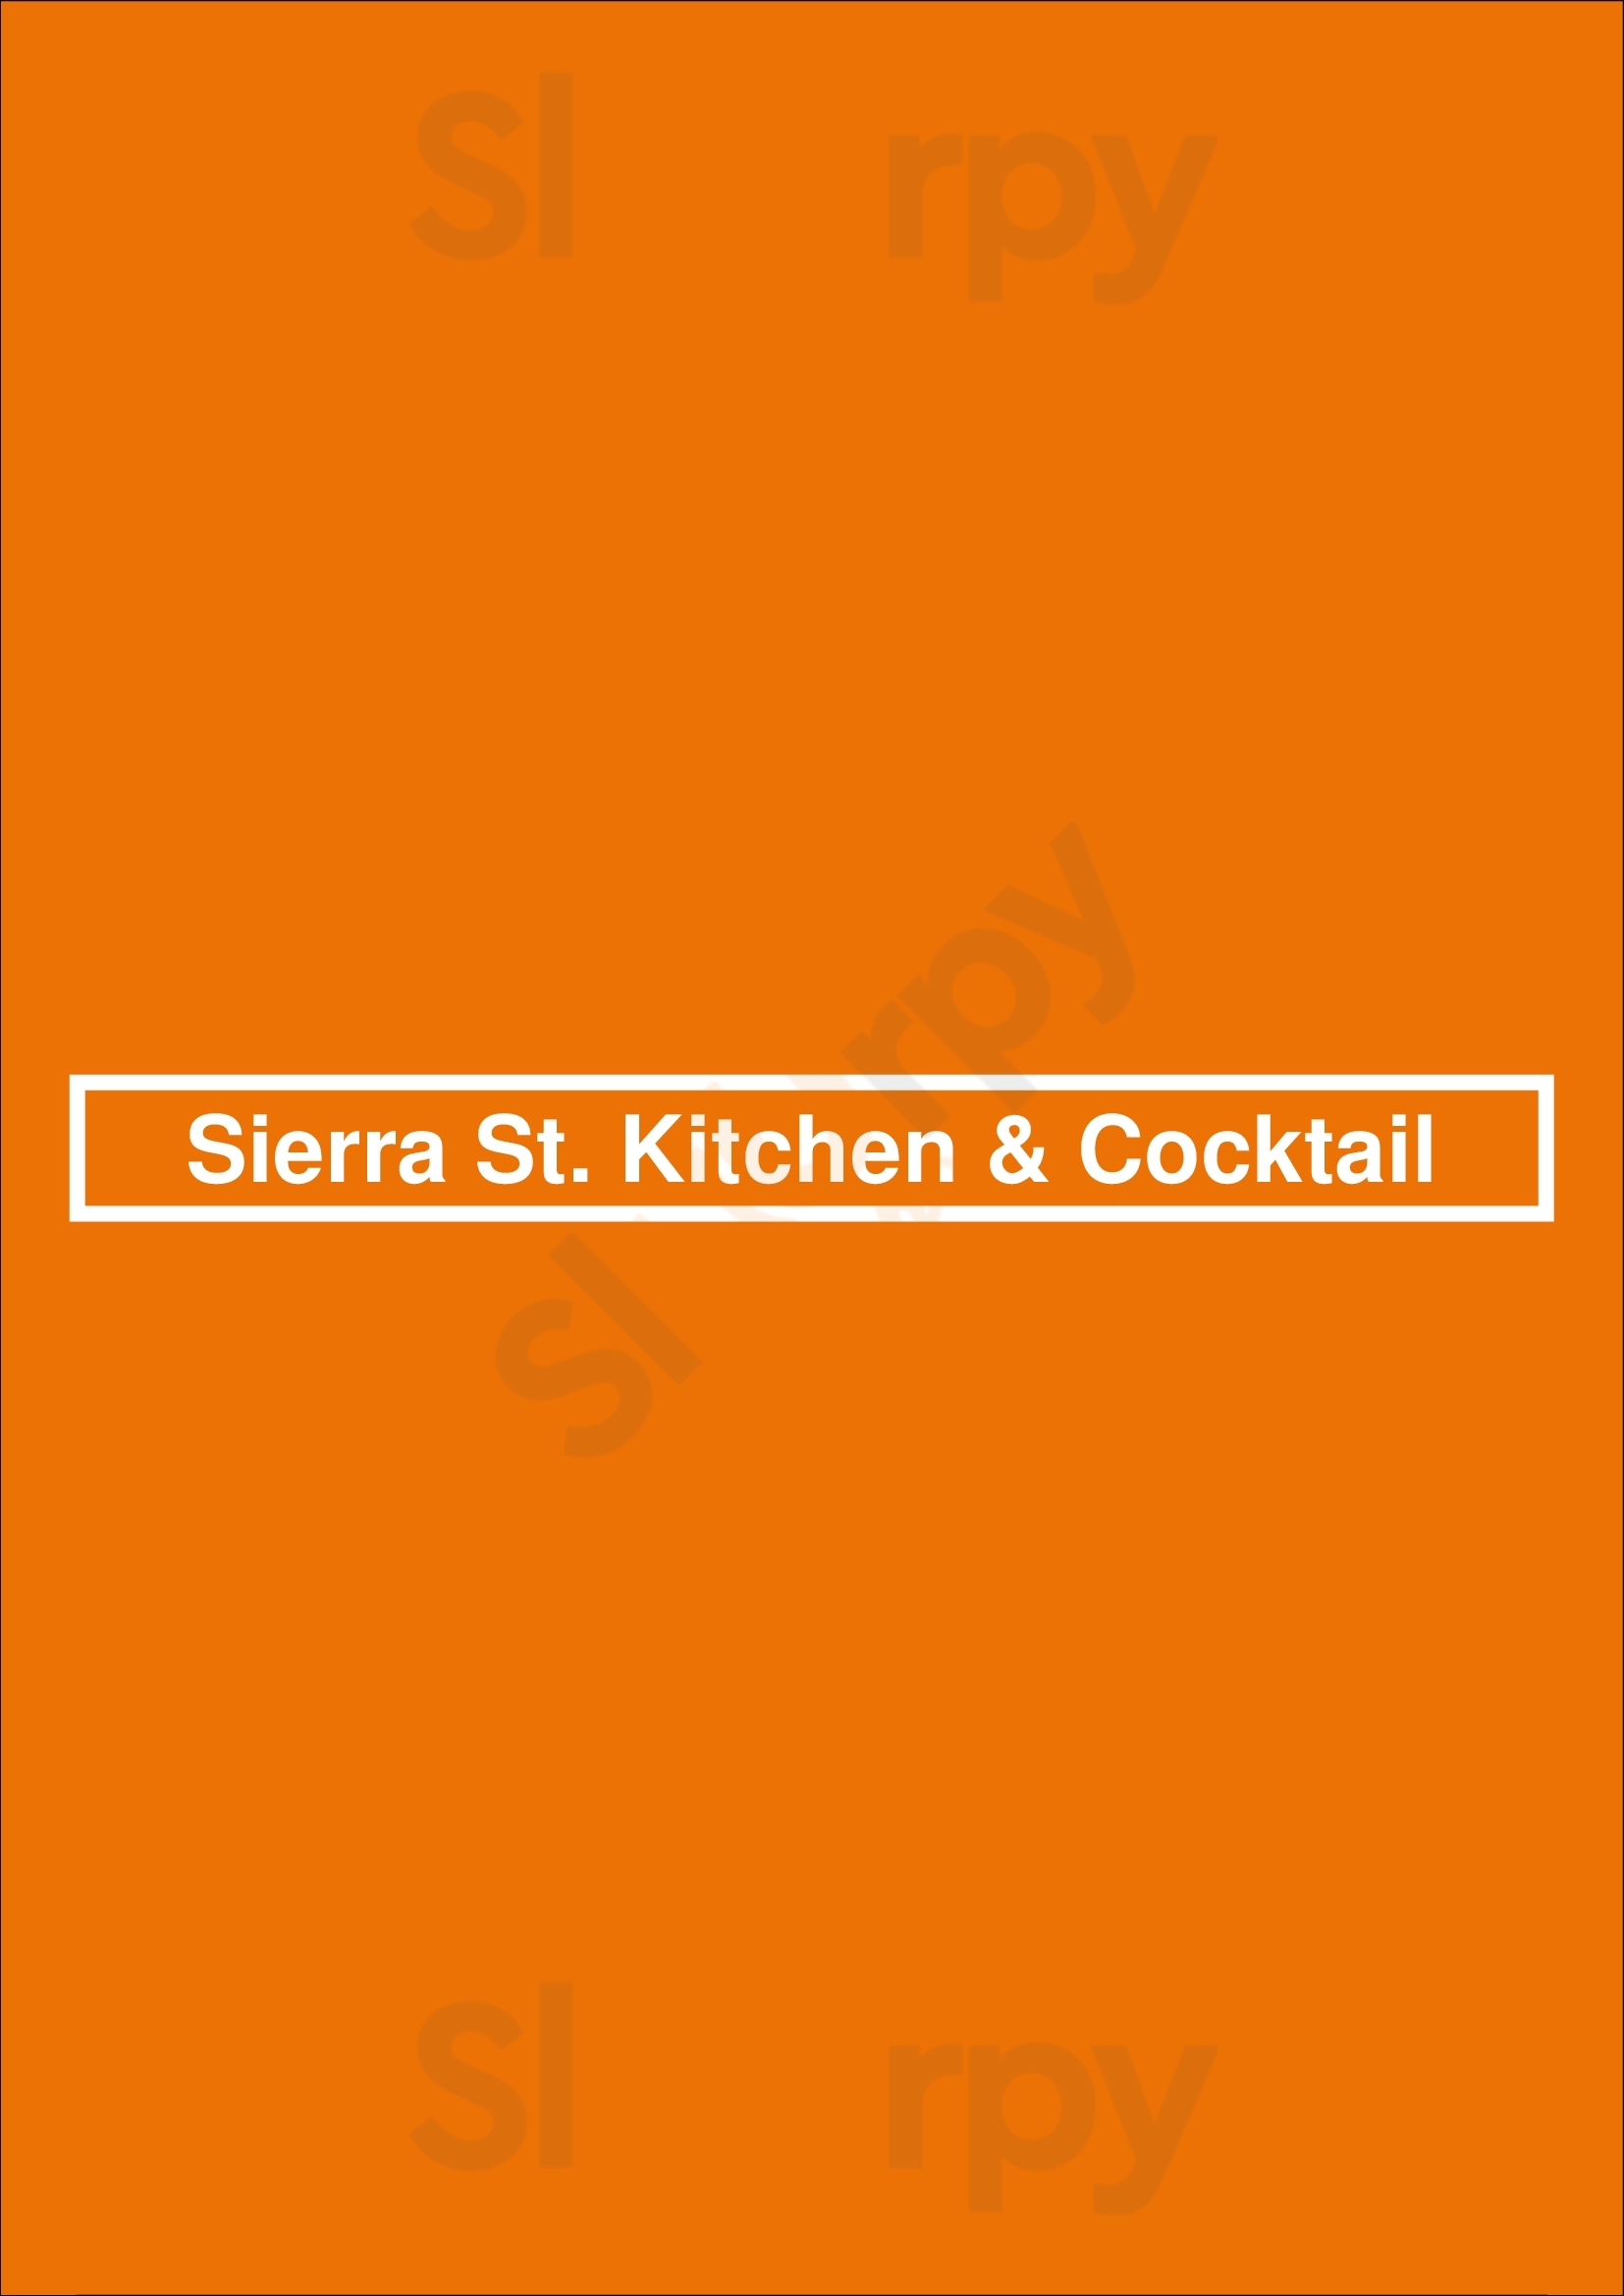 Sierra St. Kitchen & Cocktail Reno Menu - 1